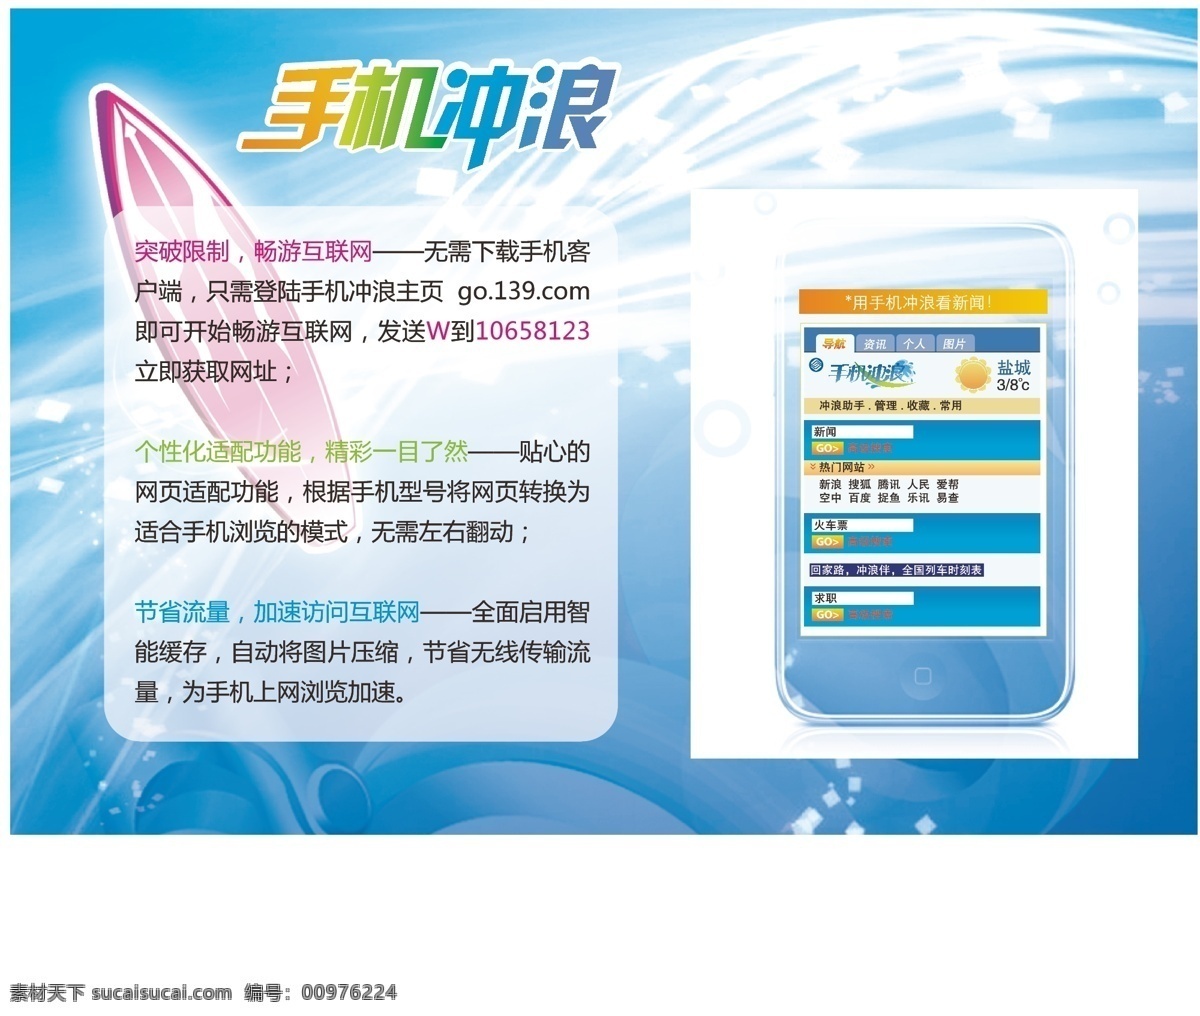 中国移动 手机上网 手机冲浪 矢量 矢量图 现代科技